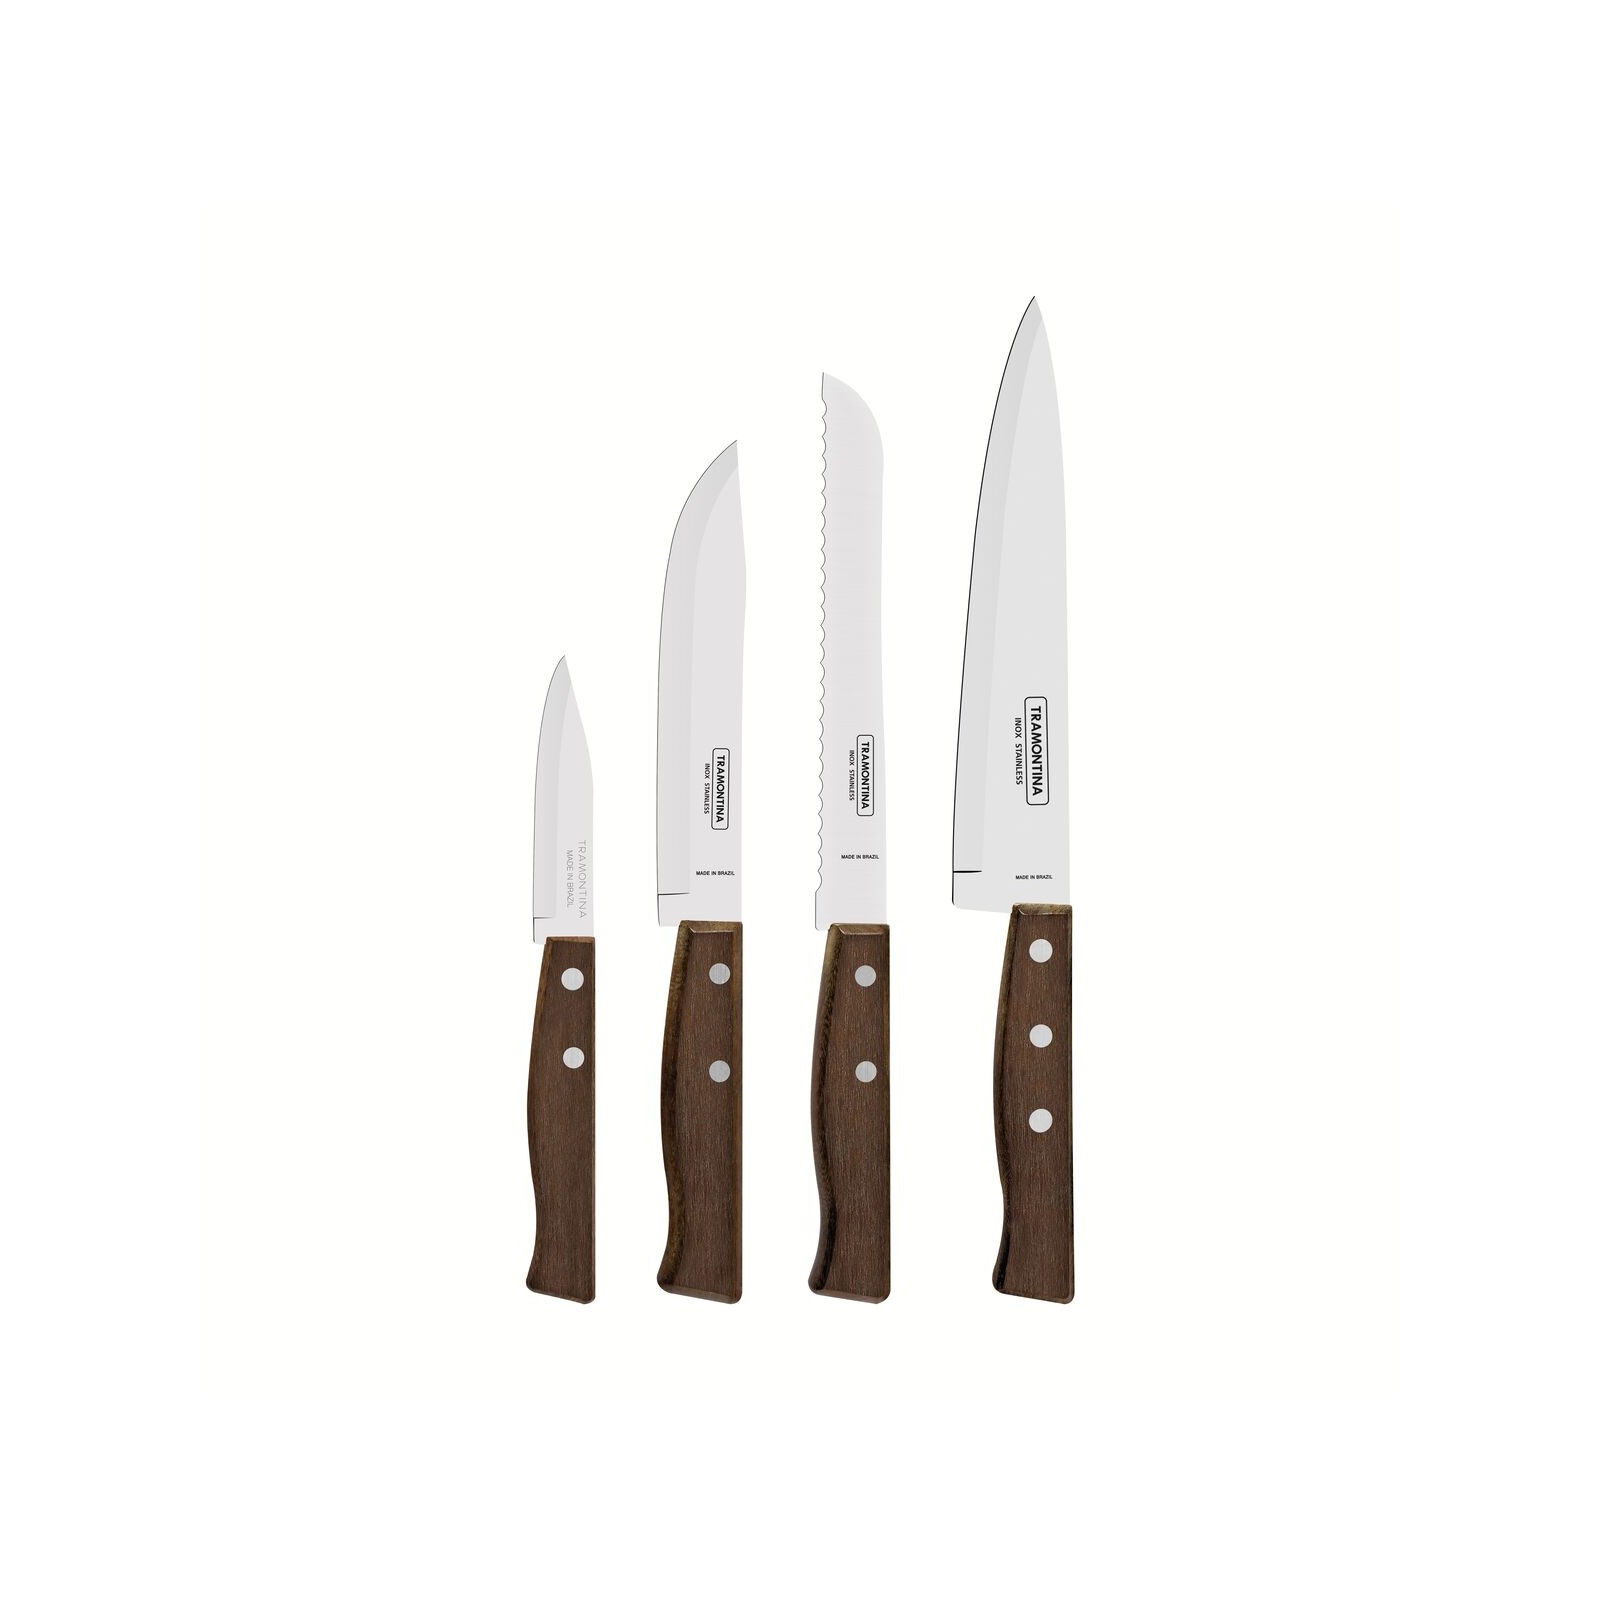 TRAMONTINA Couteau de cuisine Tradicional, 4pcs, Inox et bois